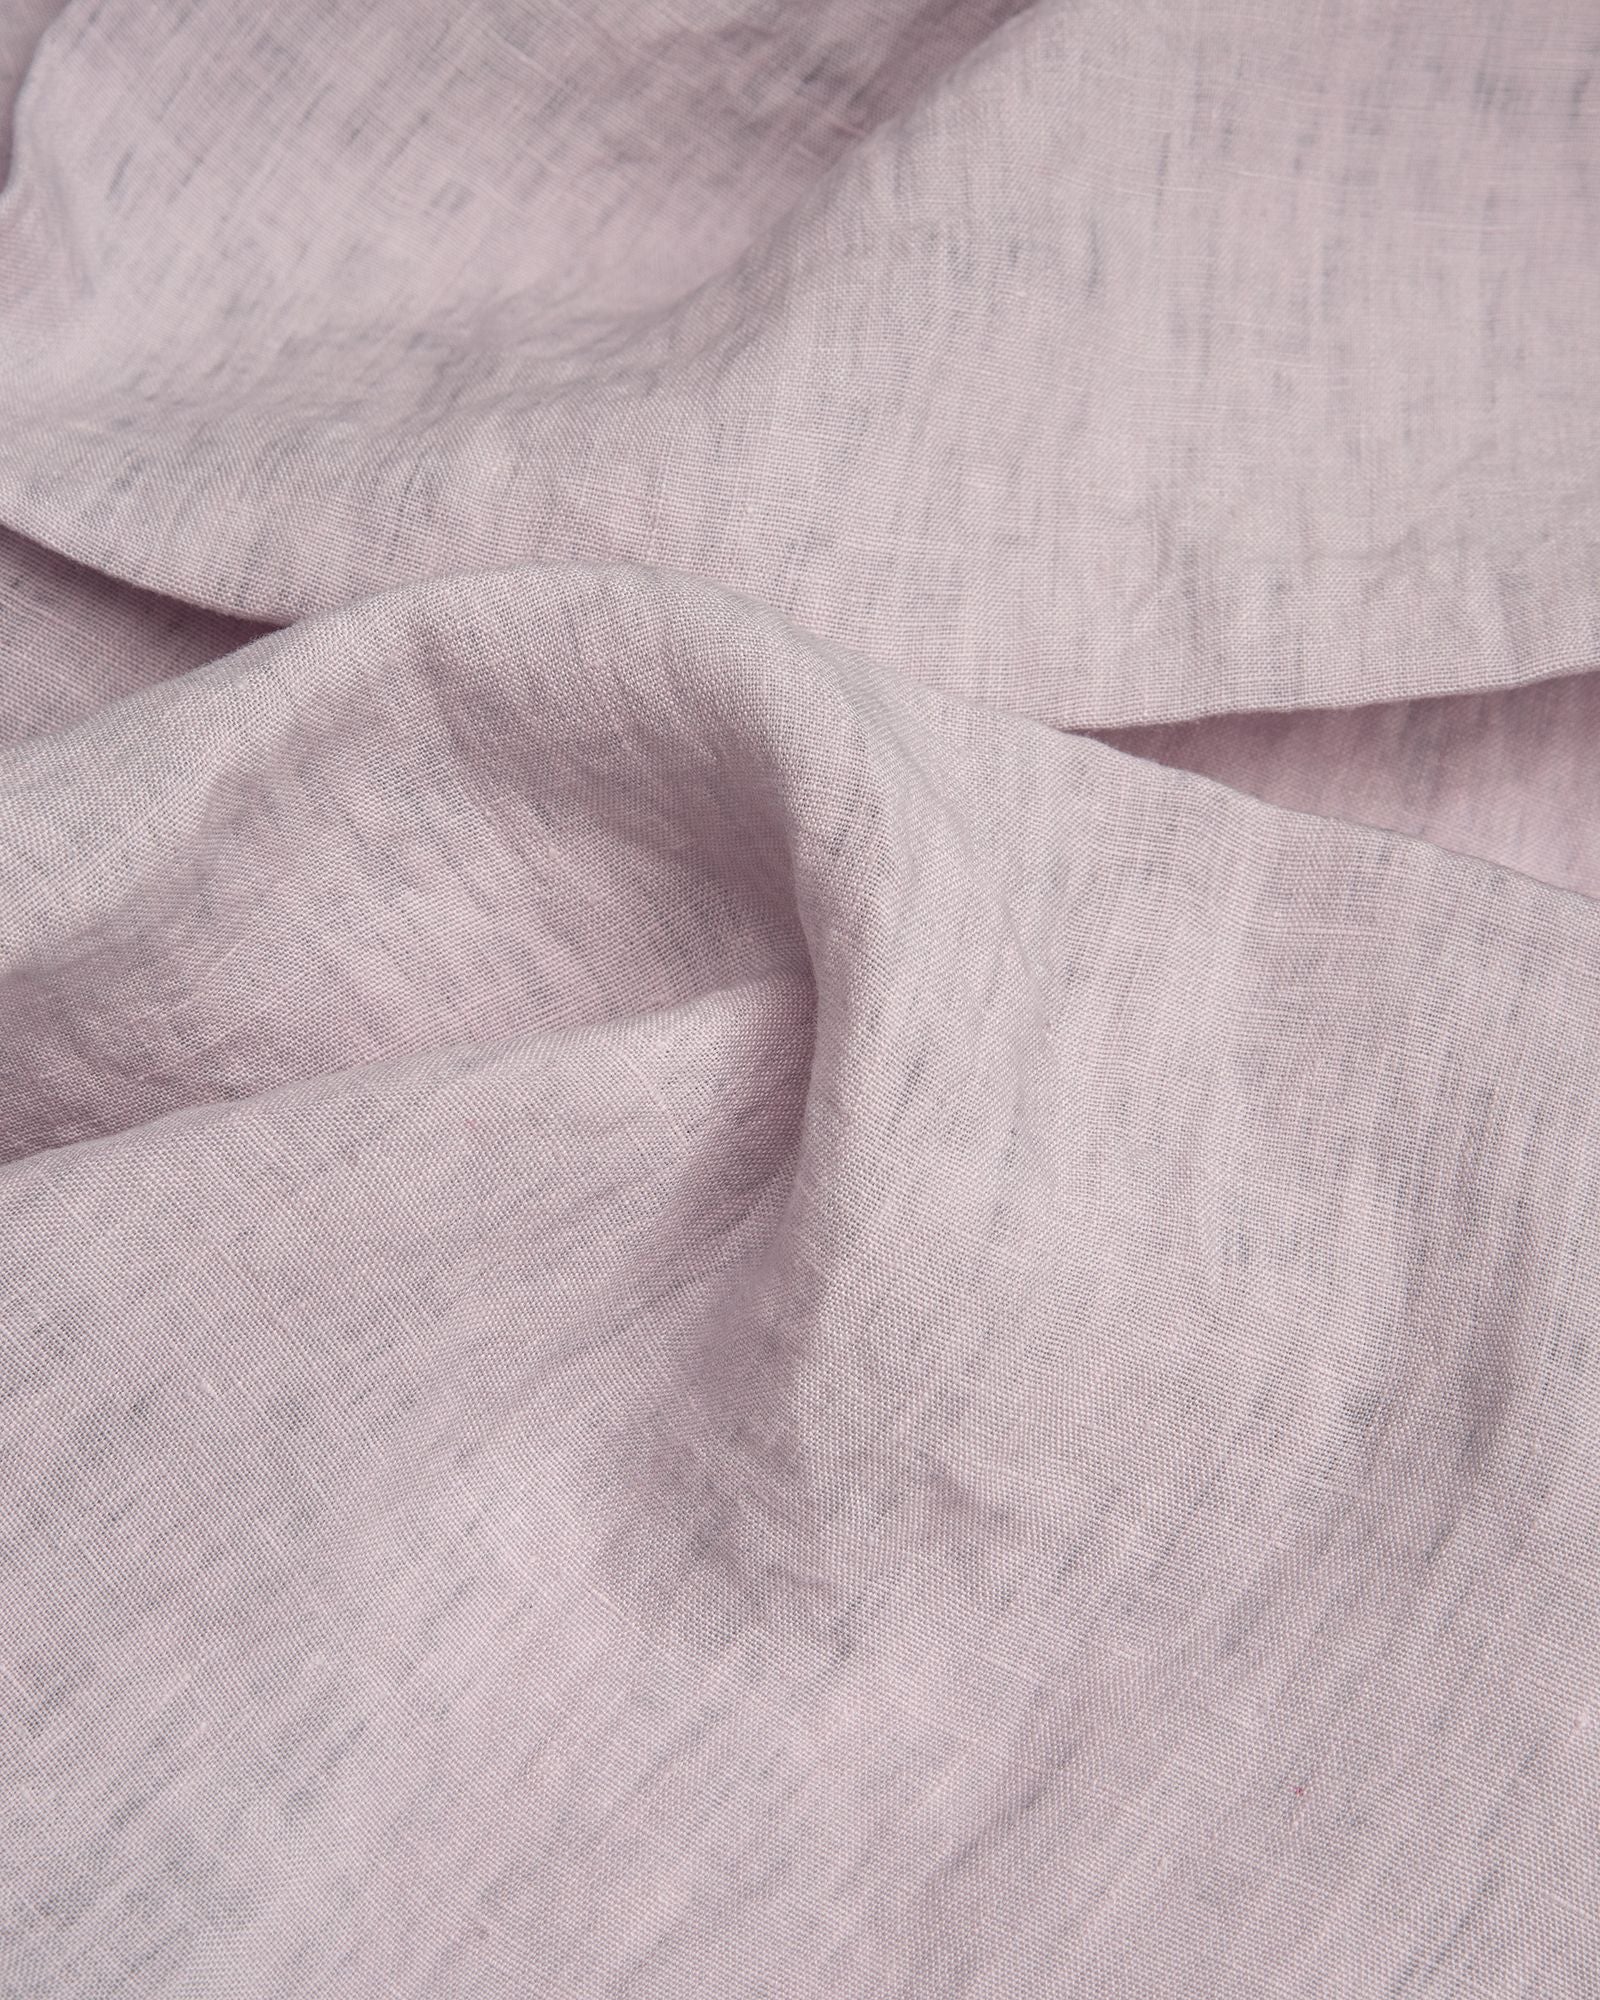 Größe: 50x 150 cm Farbe: lavendel #farbe_lavendel